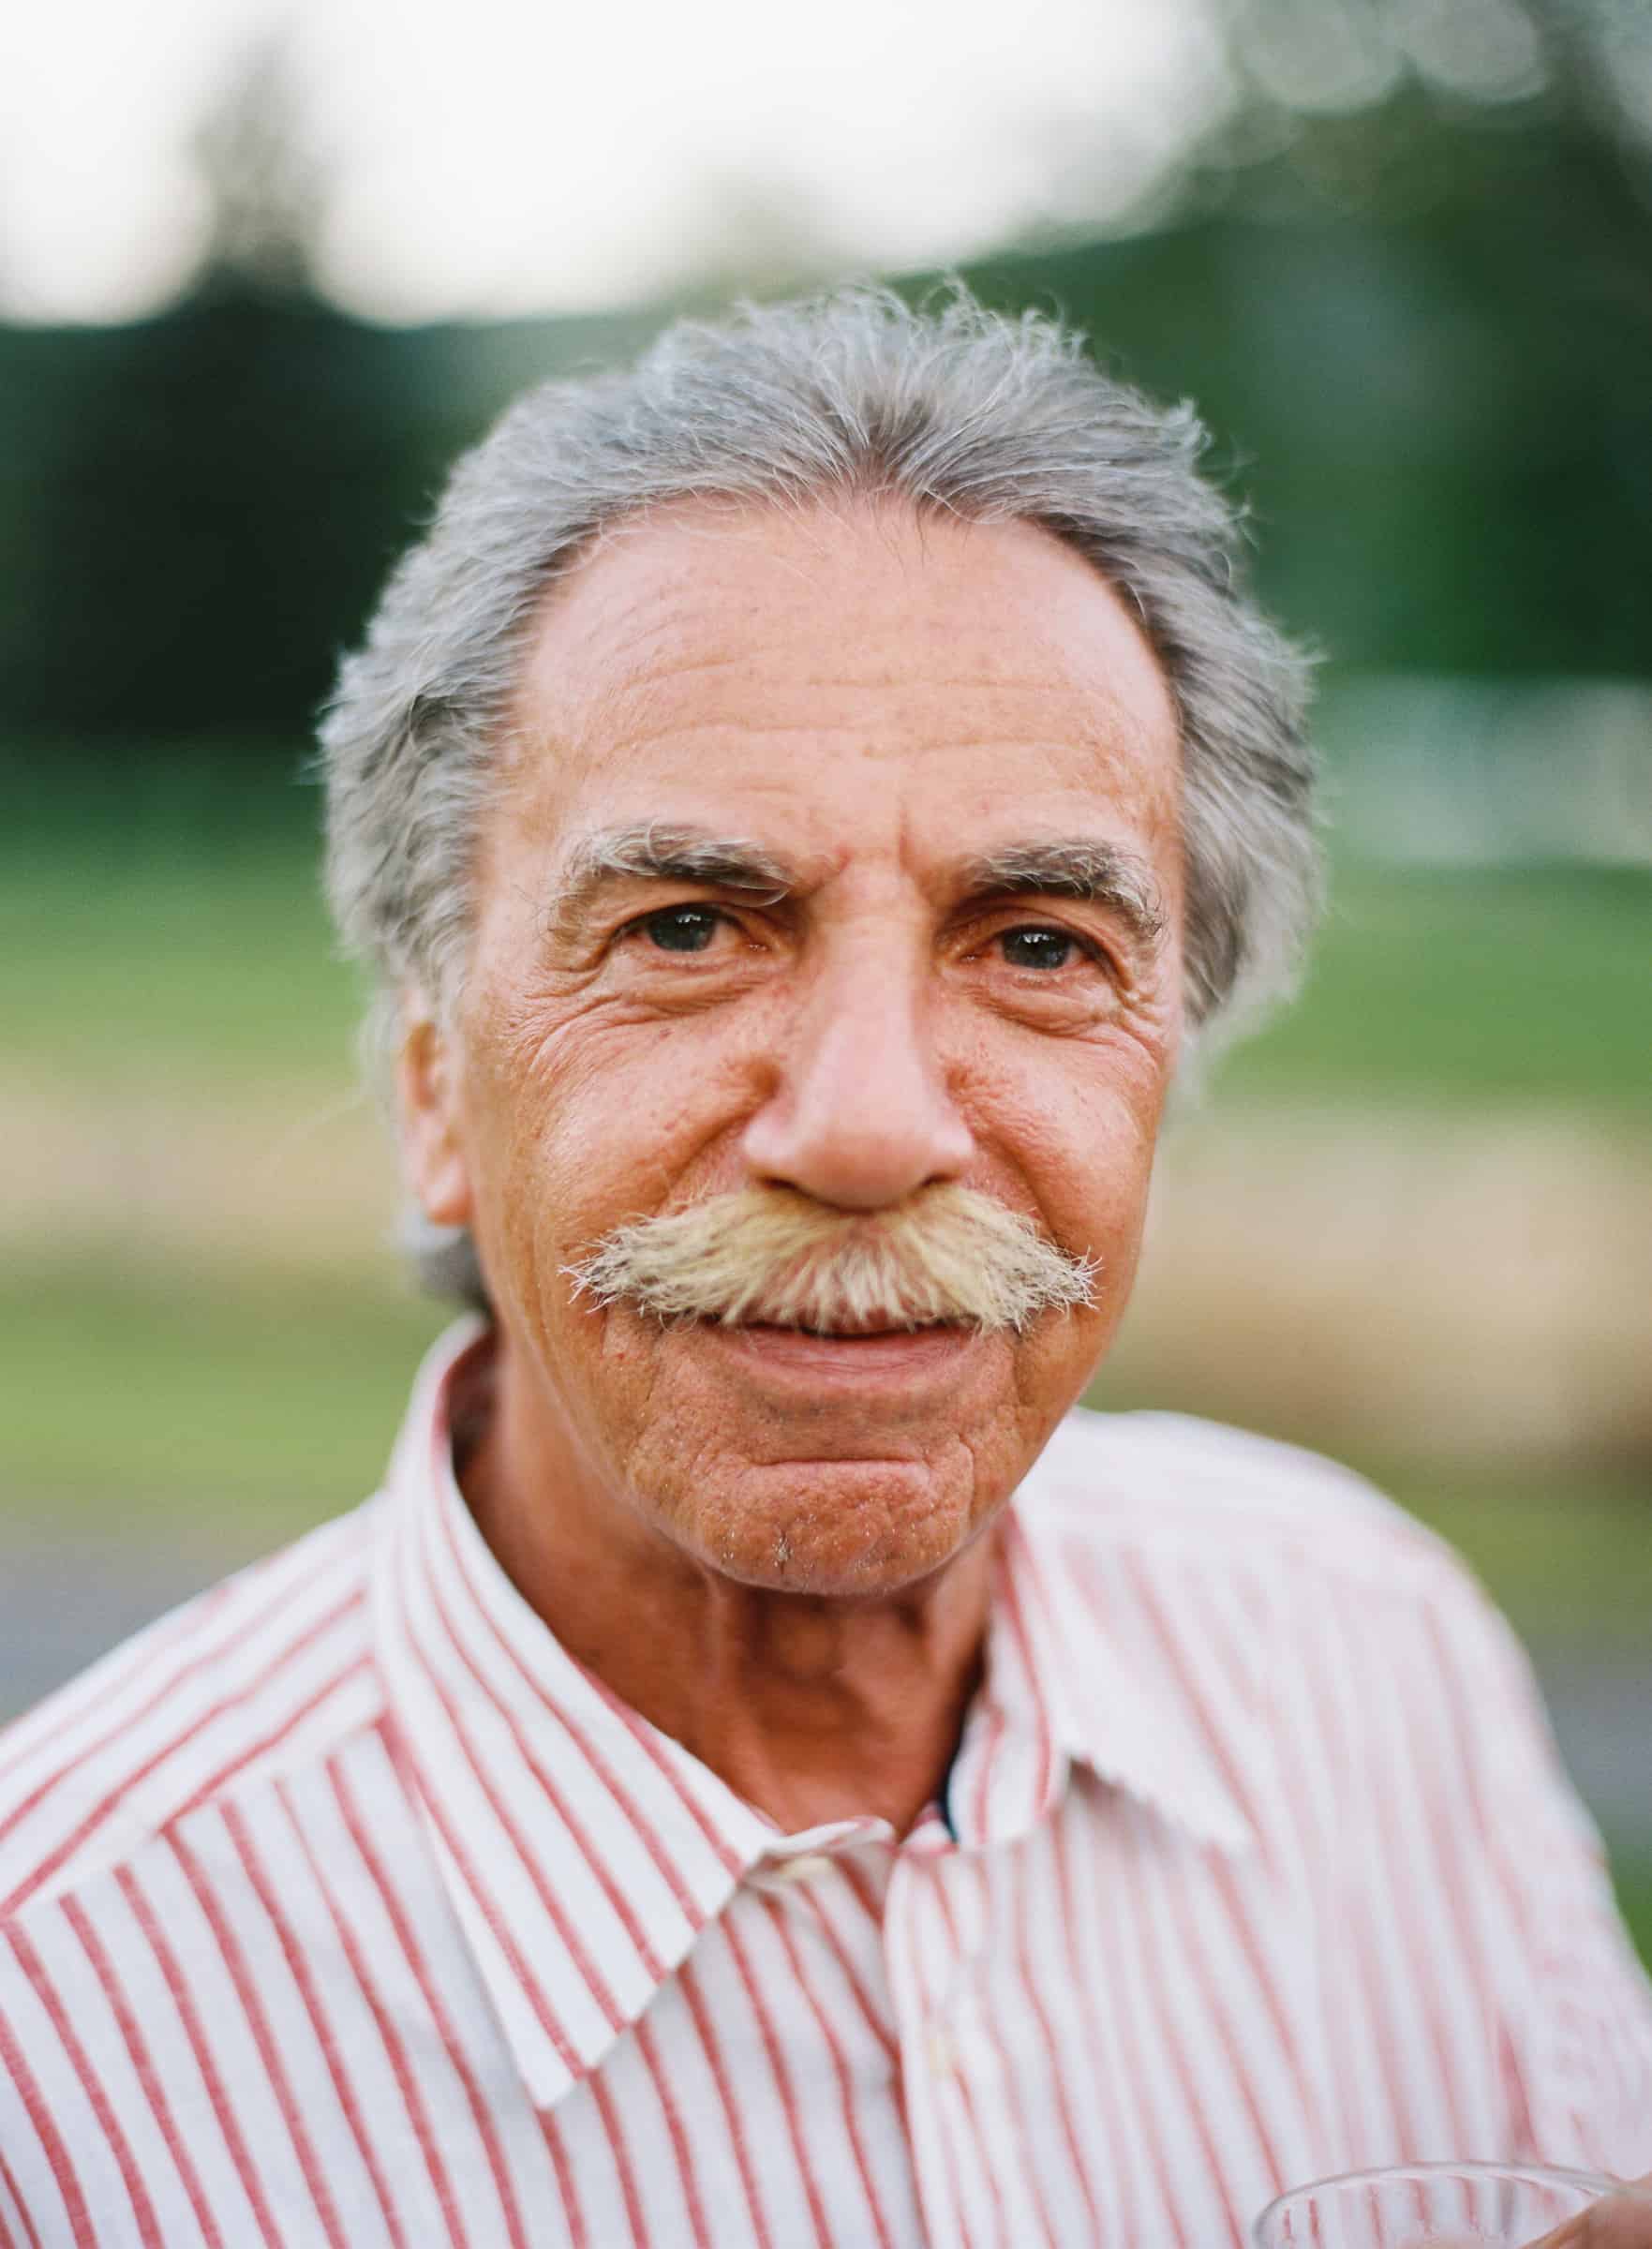 portrait of man with moustache